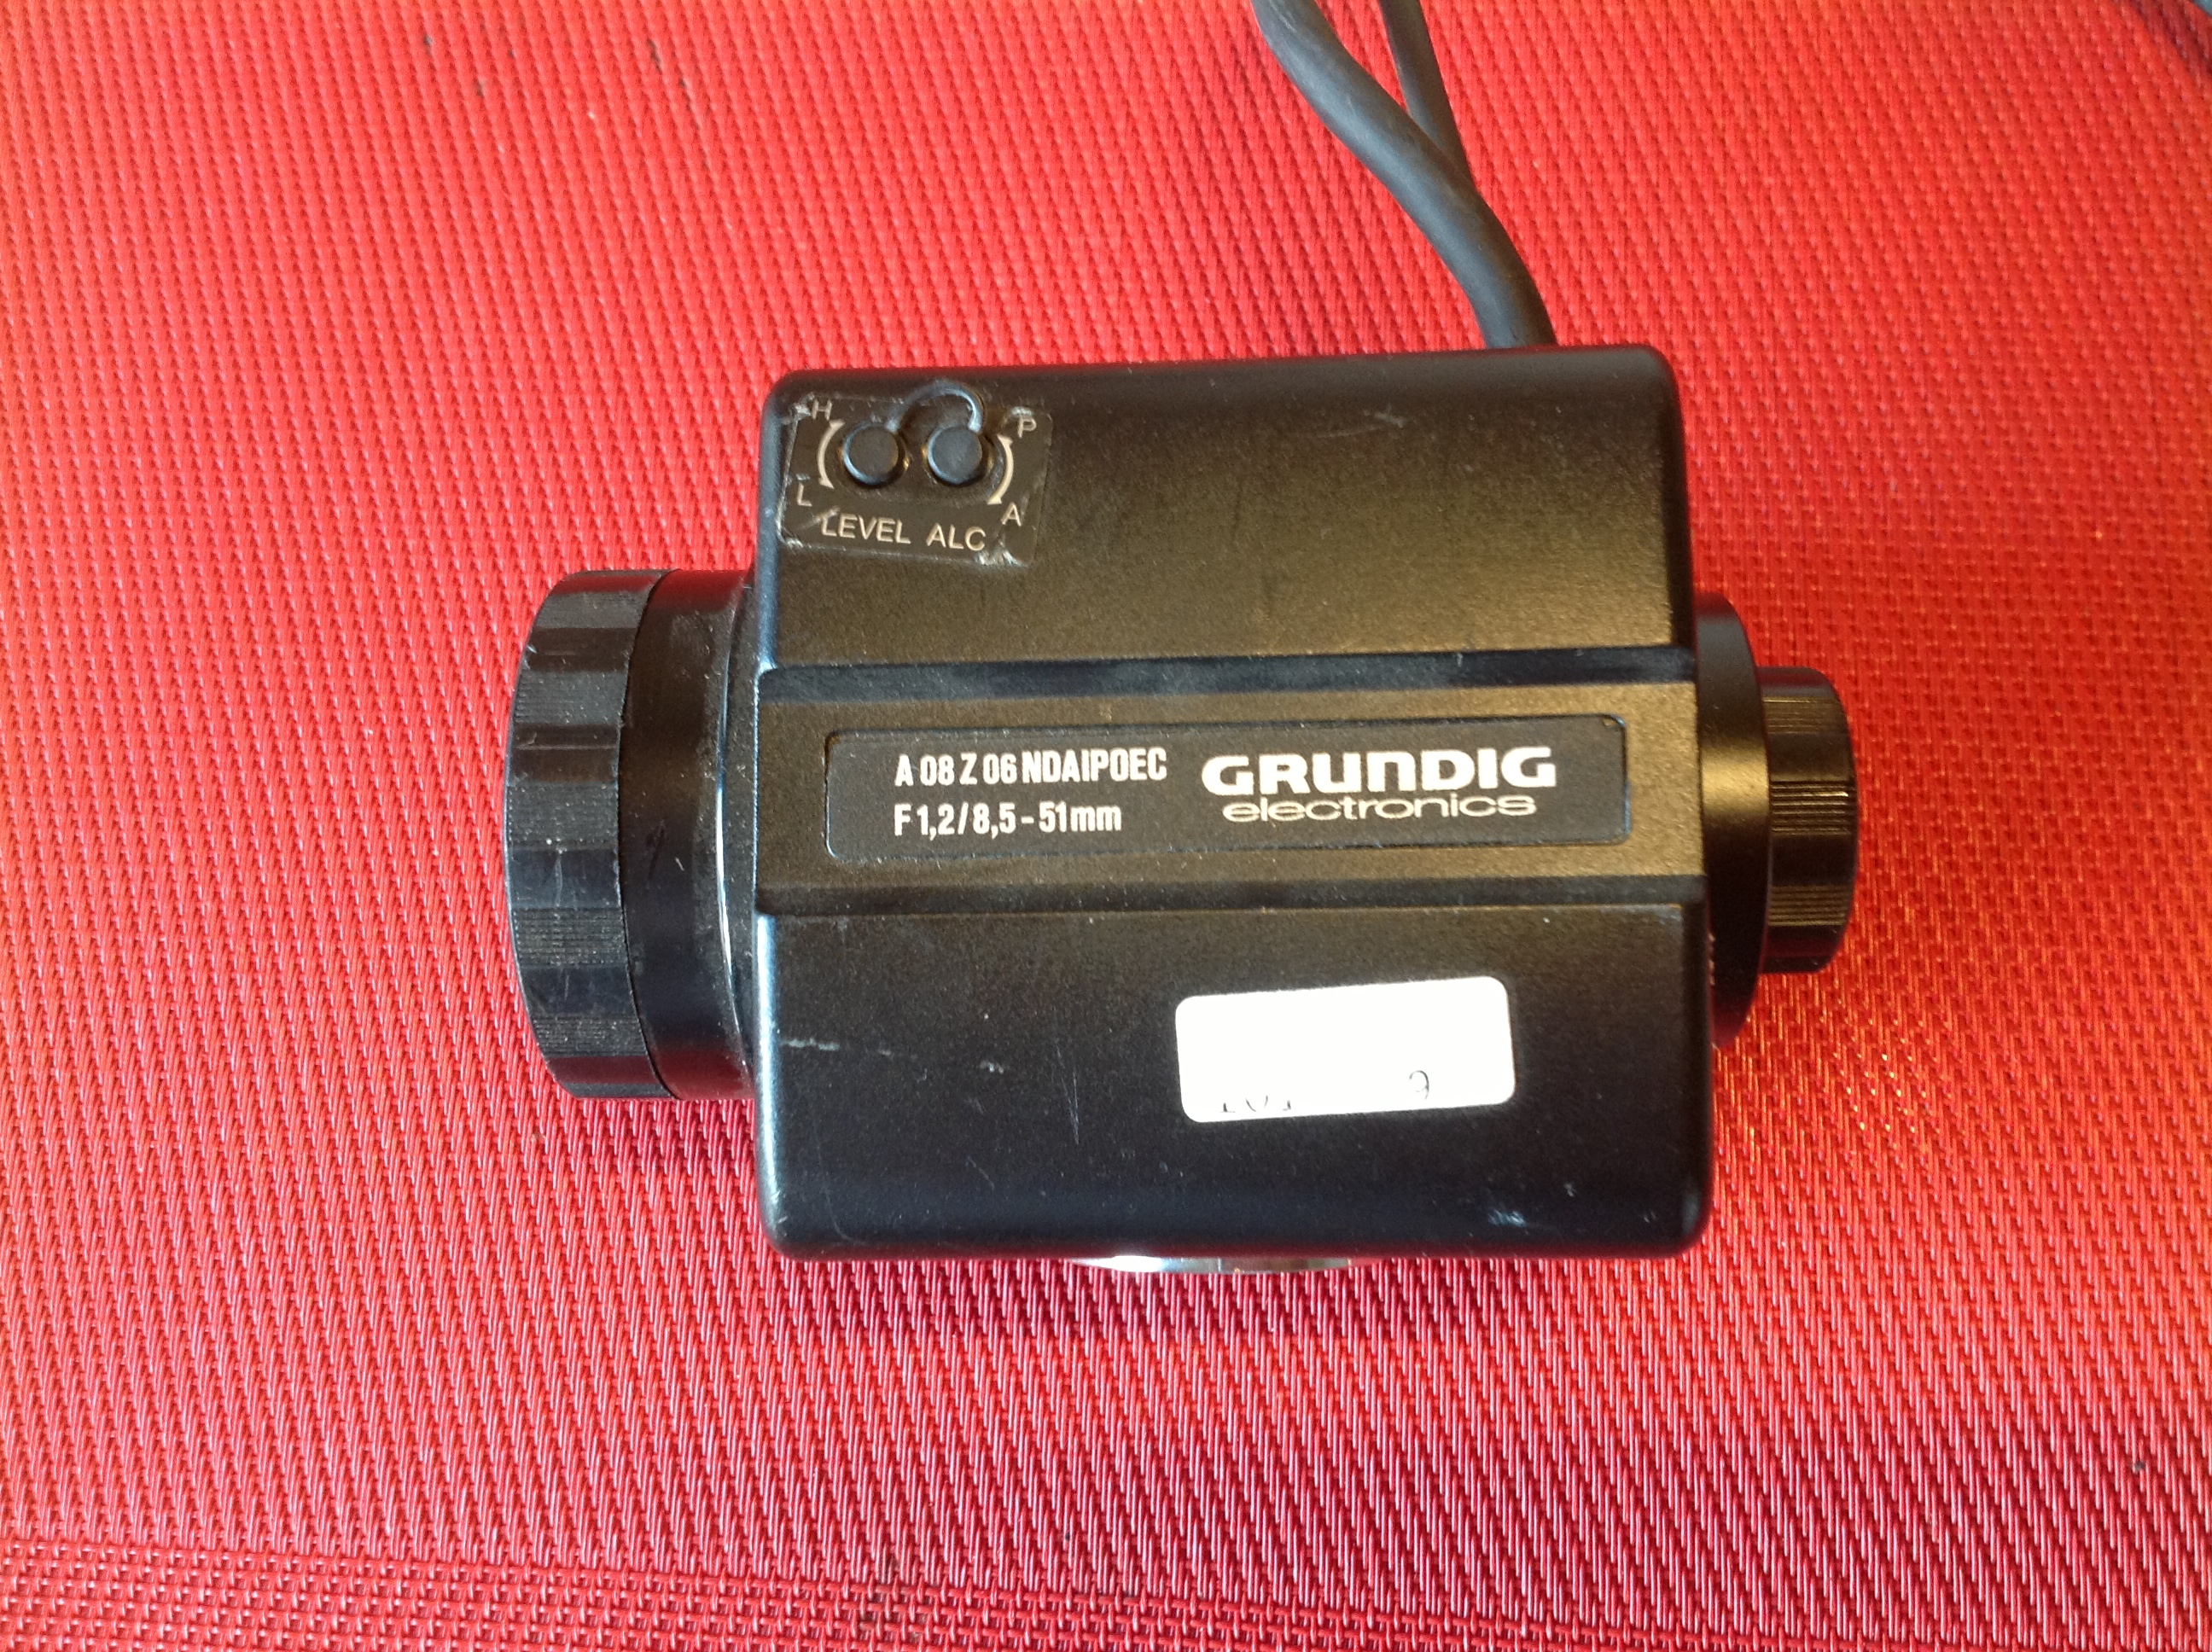 Kamera Grundig F 1,2/8,5-51 mm mit 2 Anschlusskabel